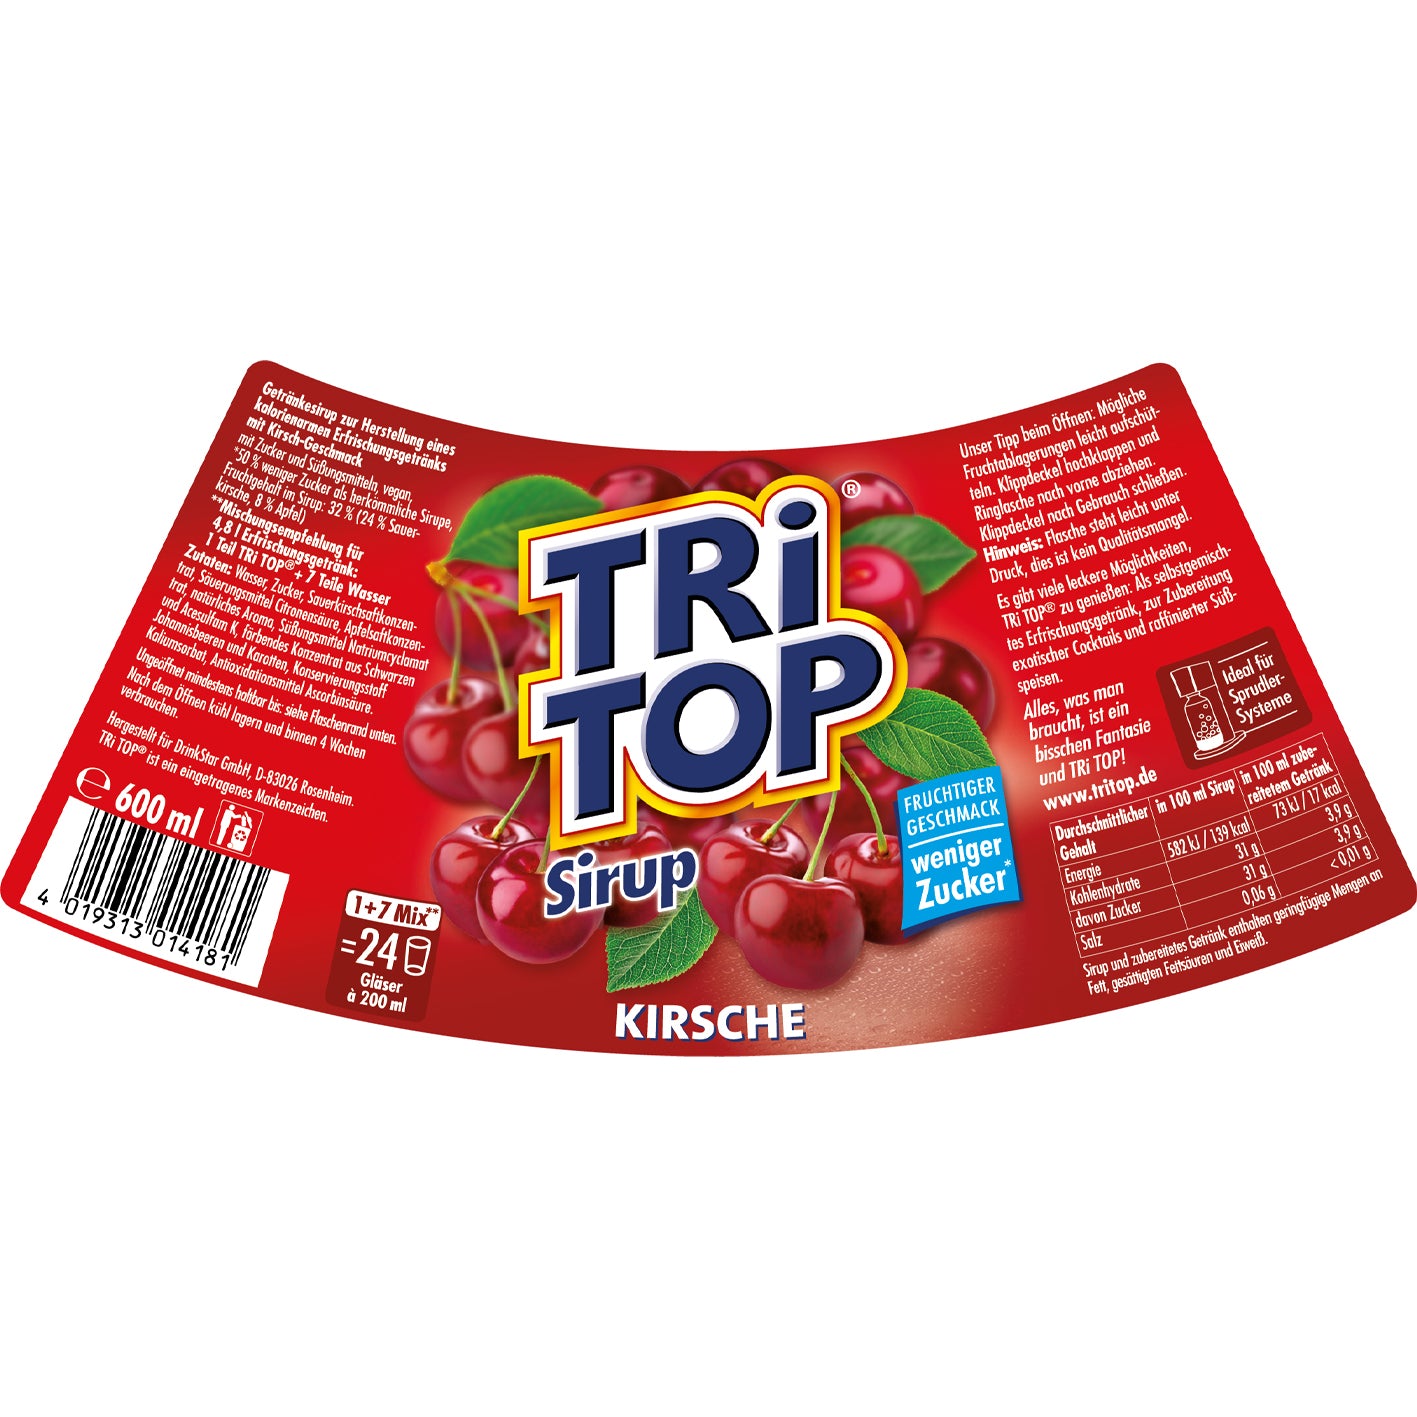 TRi TOP Sirup Sirup 3er-Set (Kirsche + Zitrone-Limette + Orange-Cola Mix)